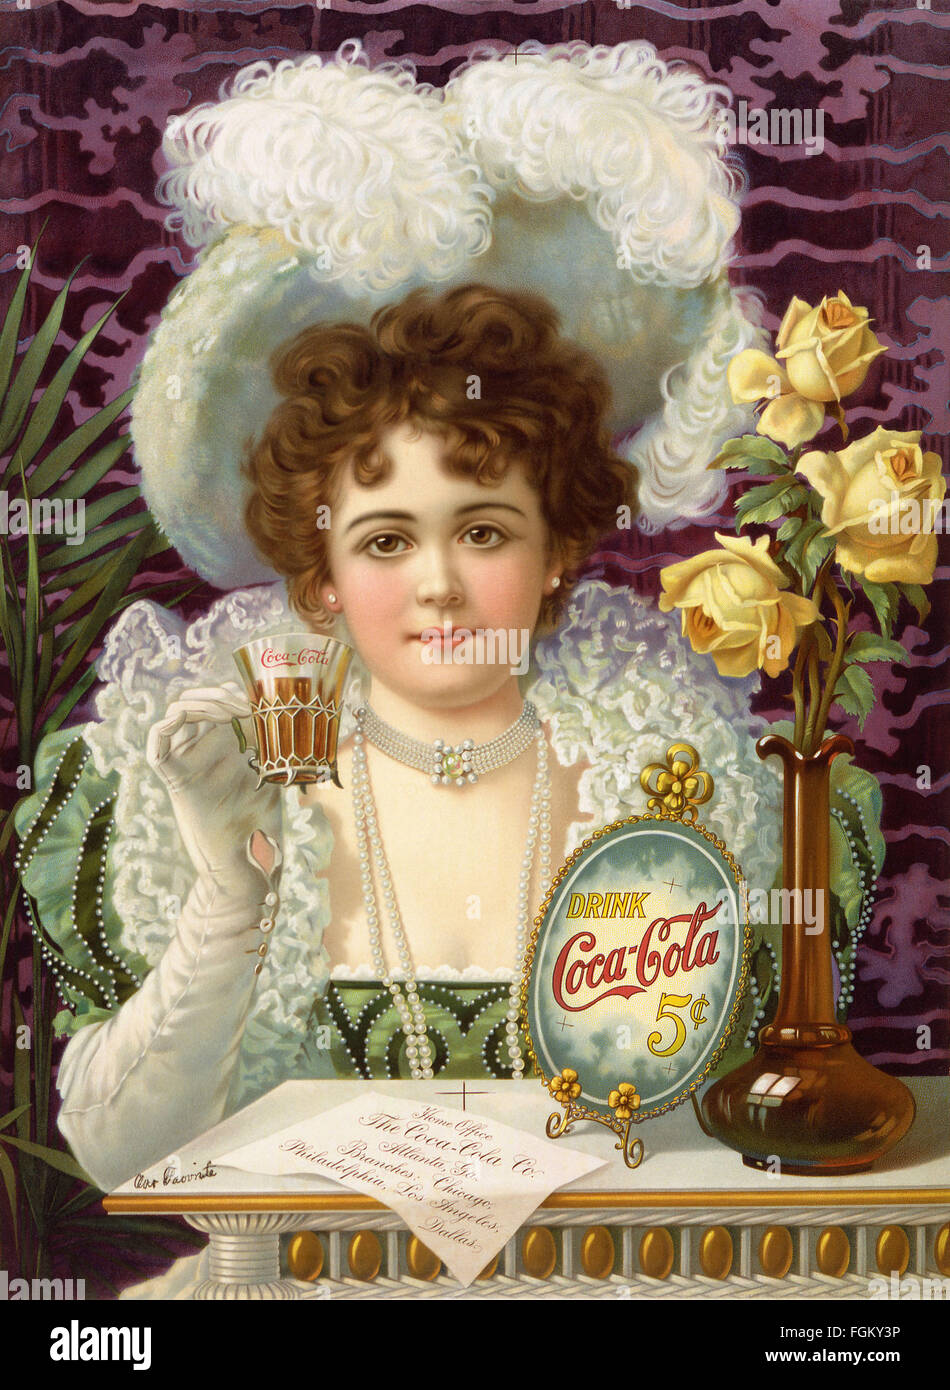 Le COCA-COLA annonce lithographique vers 1895. Le modèle est Hilda Clark (1872-1932) qui est apparu sur de nombreux produits Coca-Cola et annonces. Bibliothèque du Congrès des Etats-Unis Photo Banque D'Images